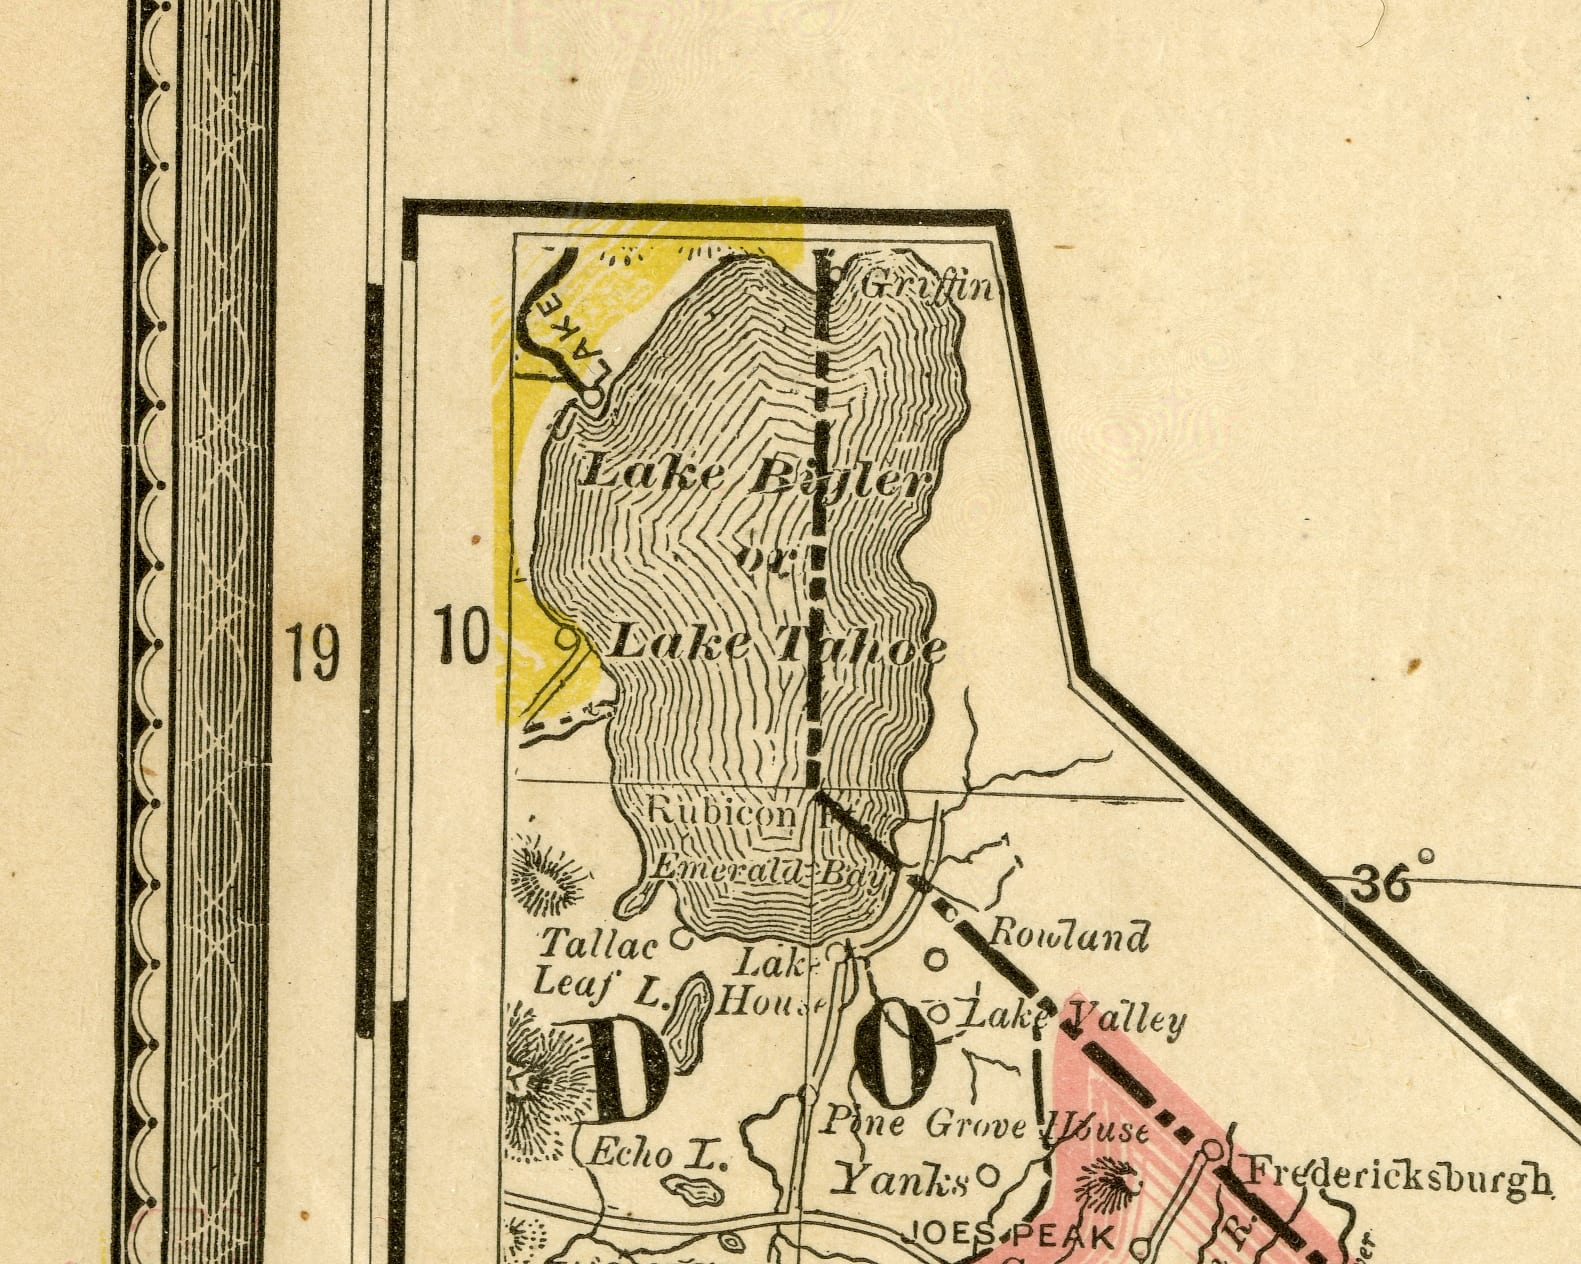 1884 Map Showing "Lake Bigler or Lake Tahoe"